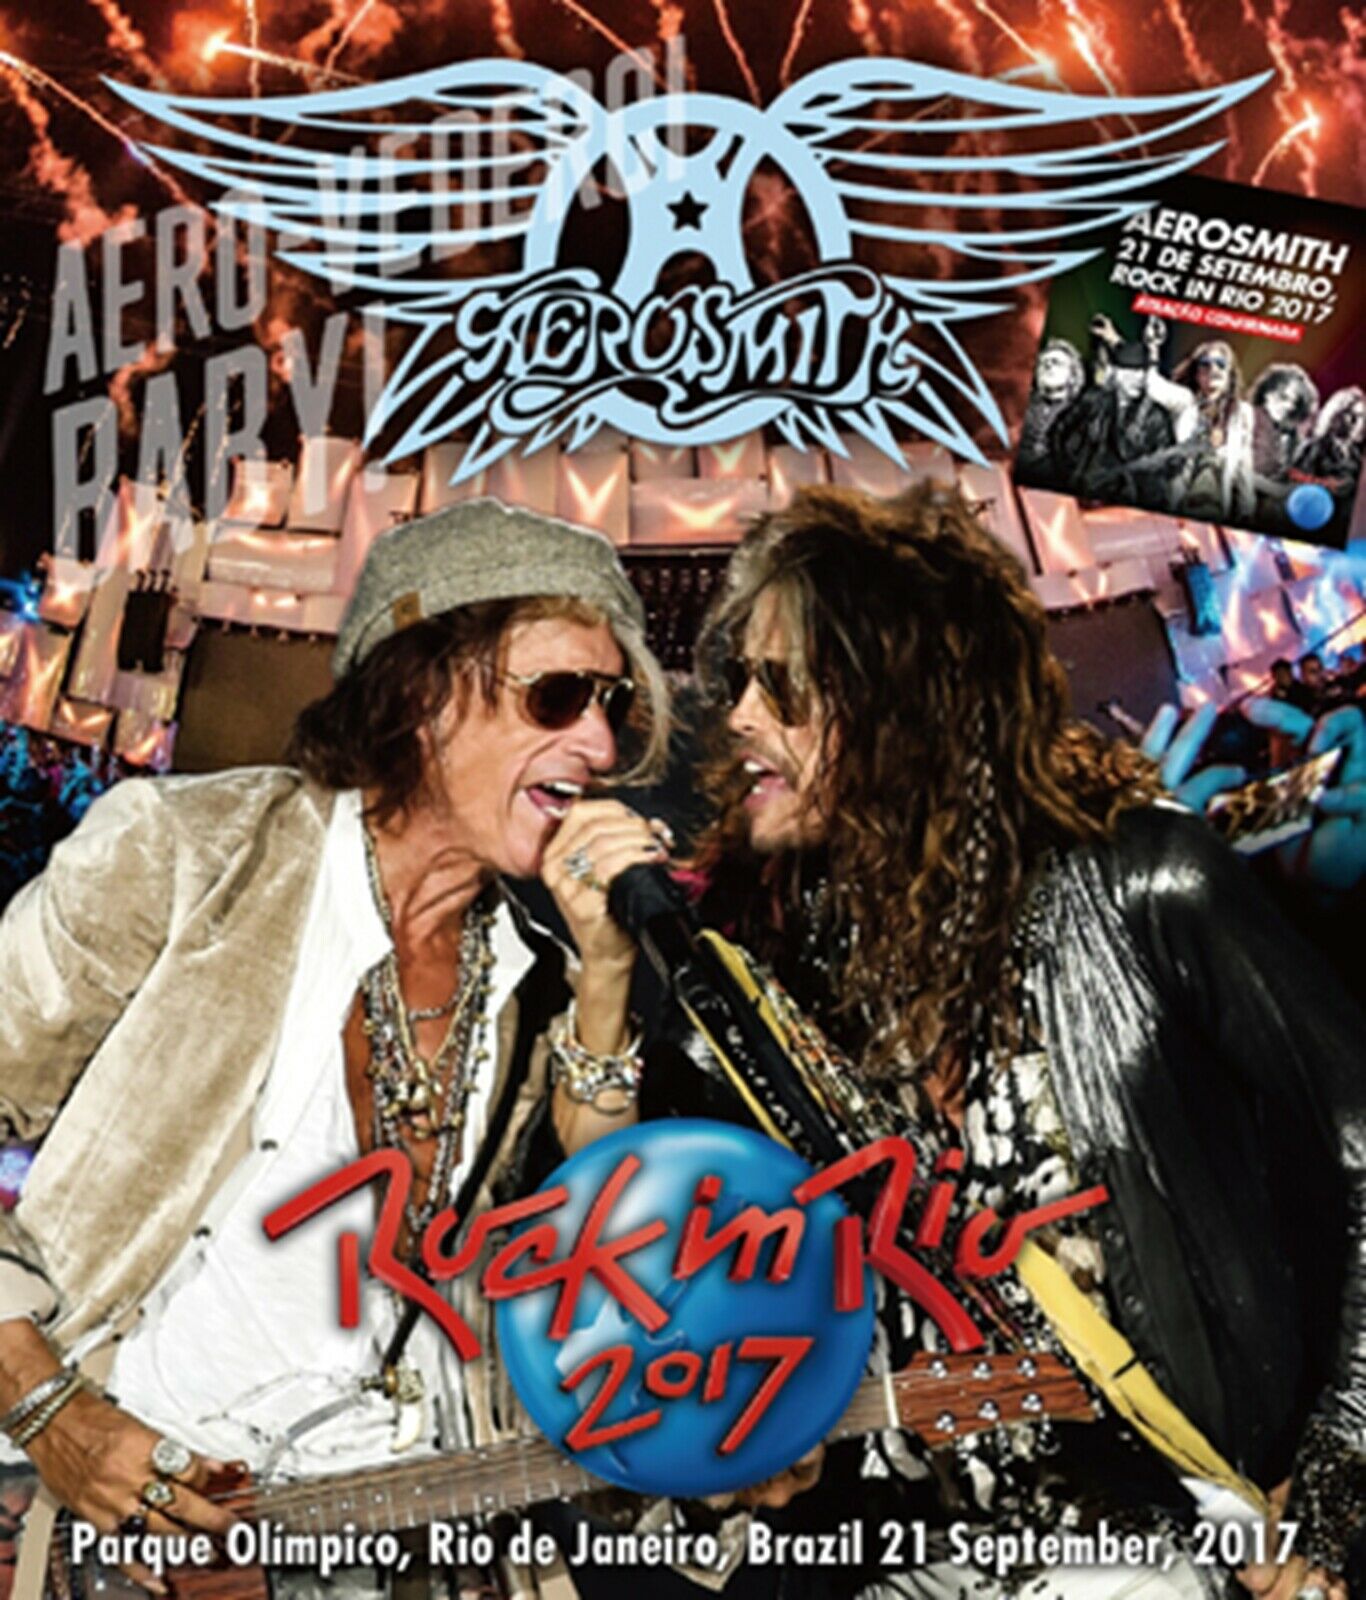 Aerosmith Rock In Rio Brasil 2017 21st September Blu-ray 1 Discs